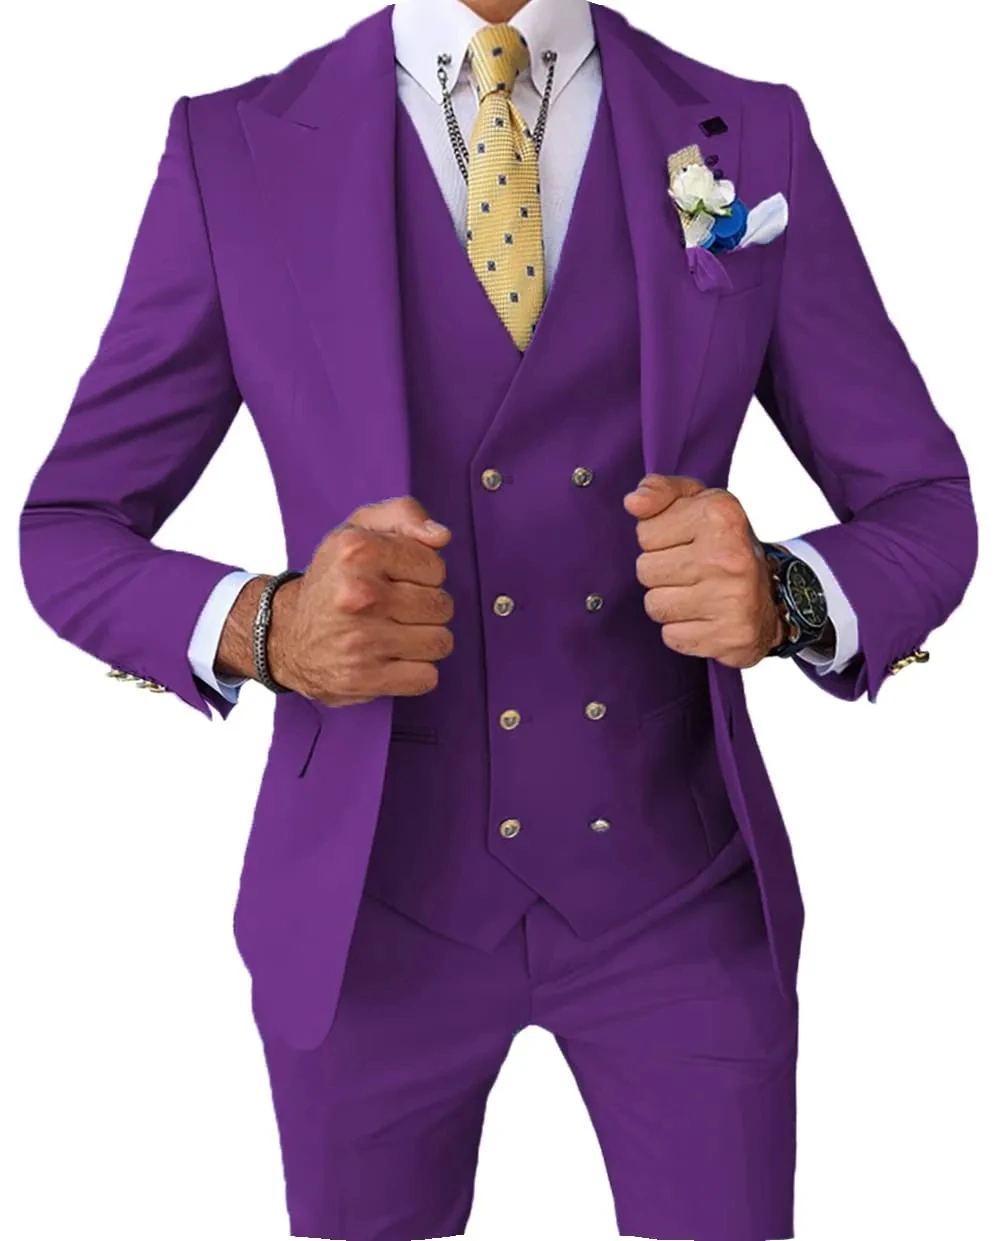 סגול חליפות חתן כפתור אחד האיש הטוב ביותר שיא דש השושבין חליפות גברים חתן הנשף חליפות חליפת עסקים (ז ' קט+מכנסיים+וסט)